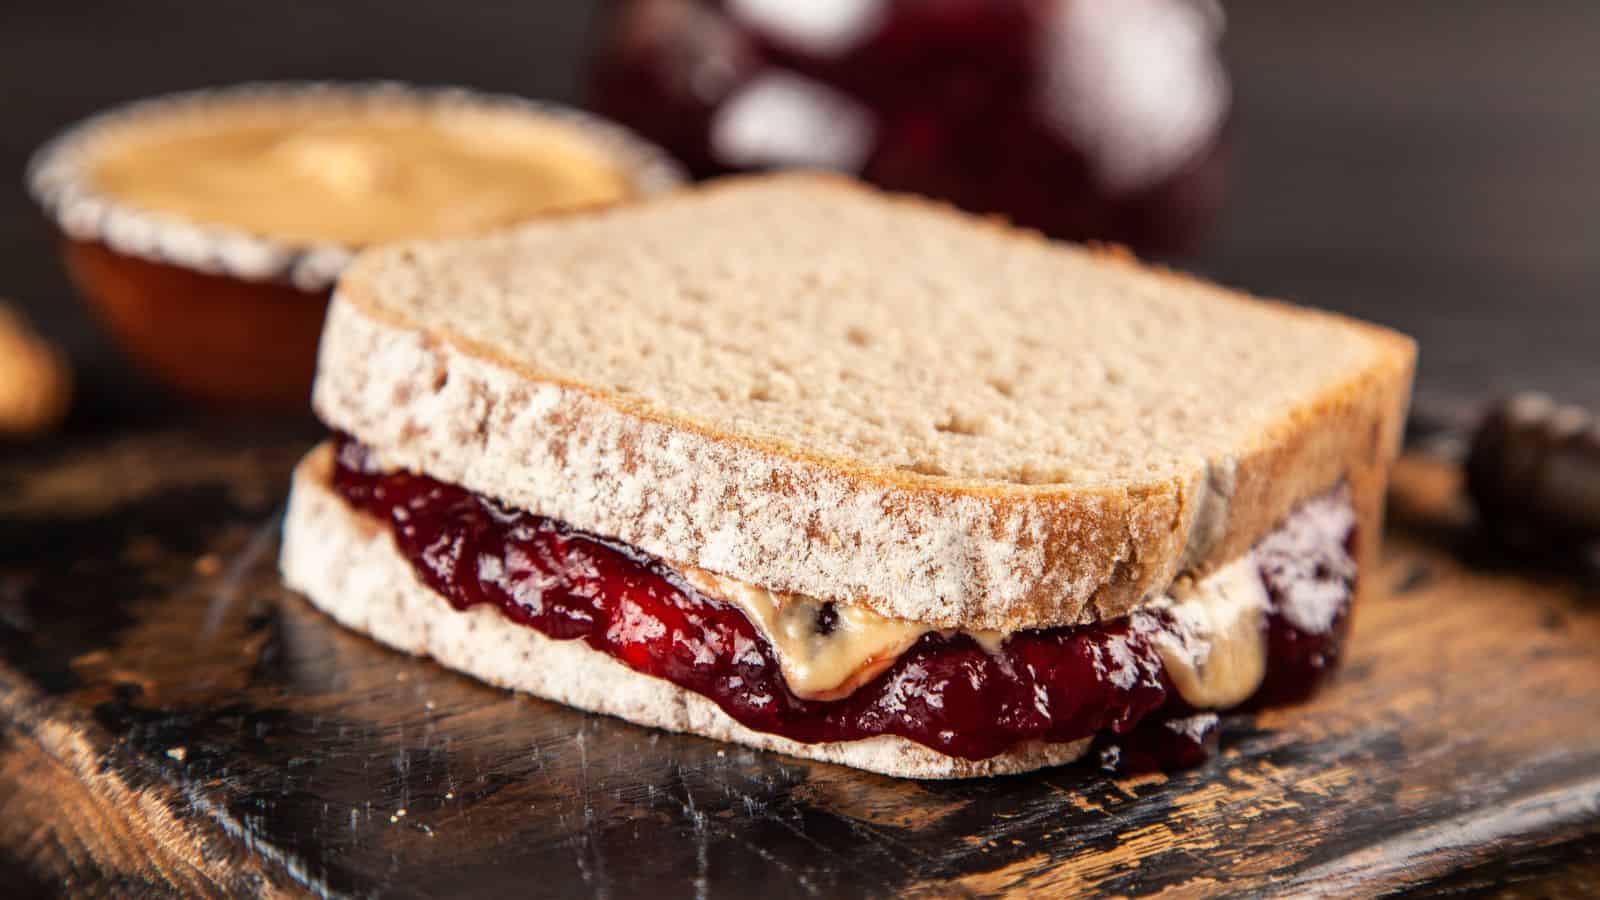 America’s Top 19 Favorite Sandwiches